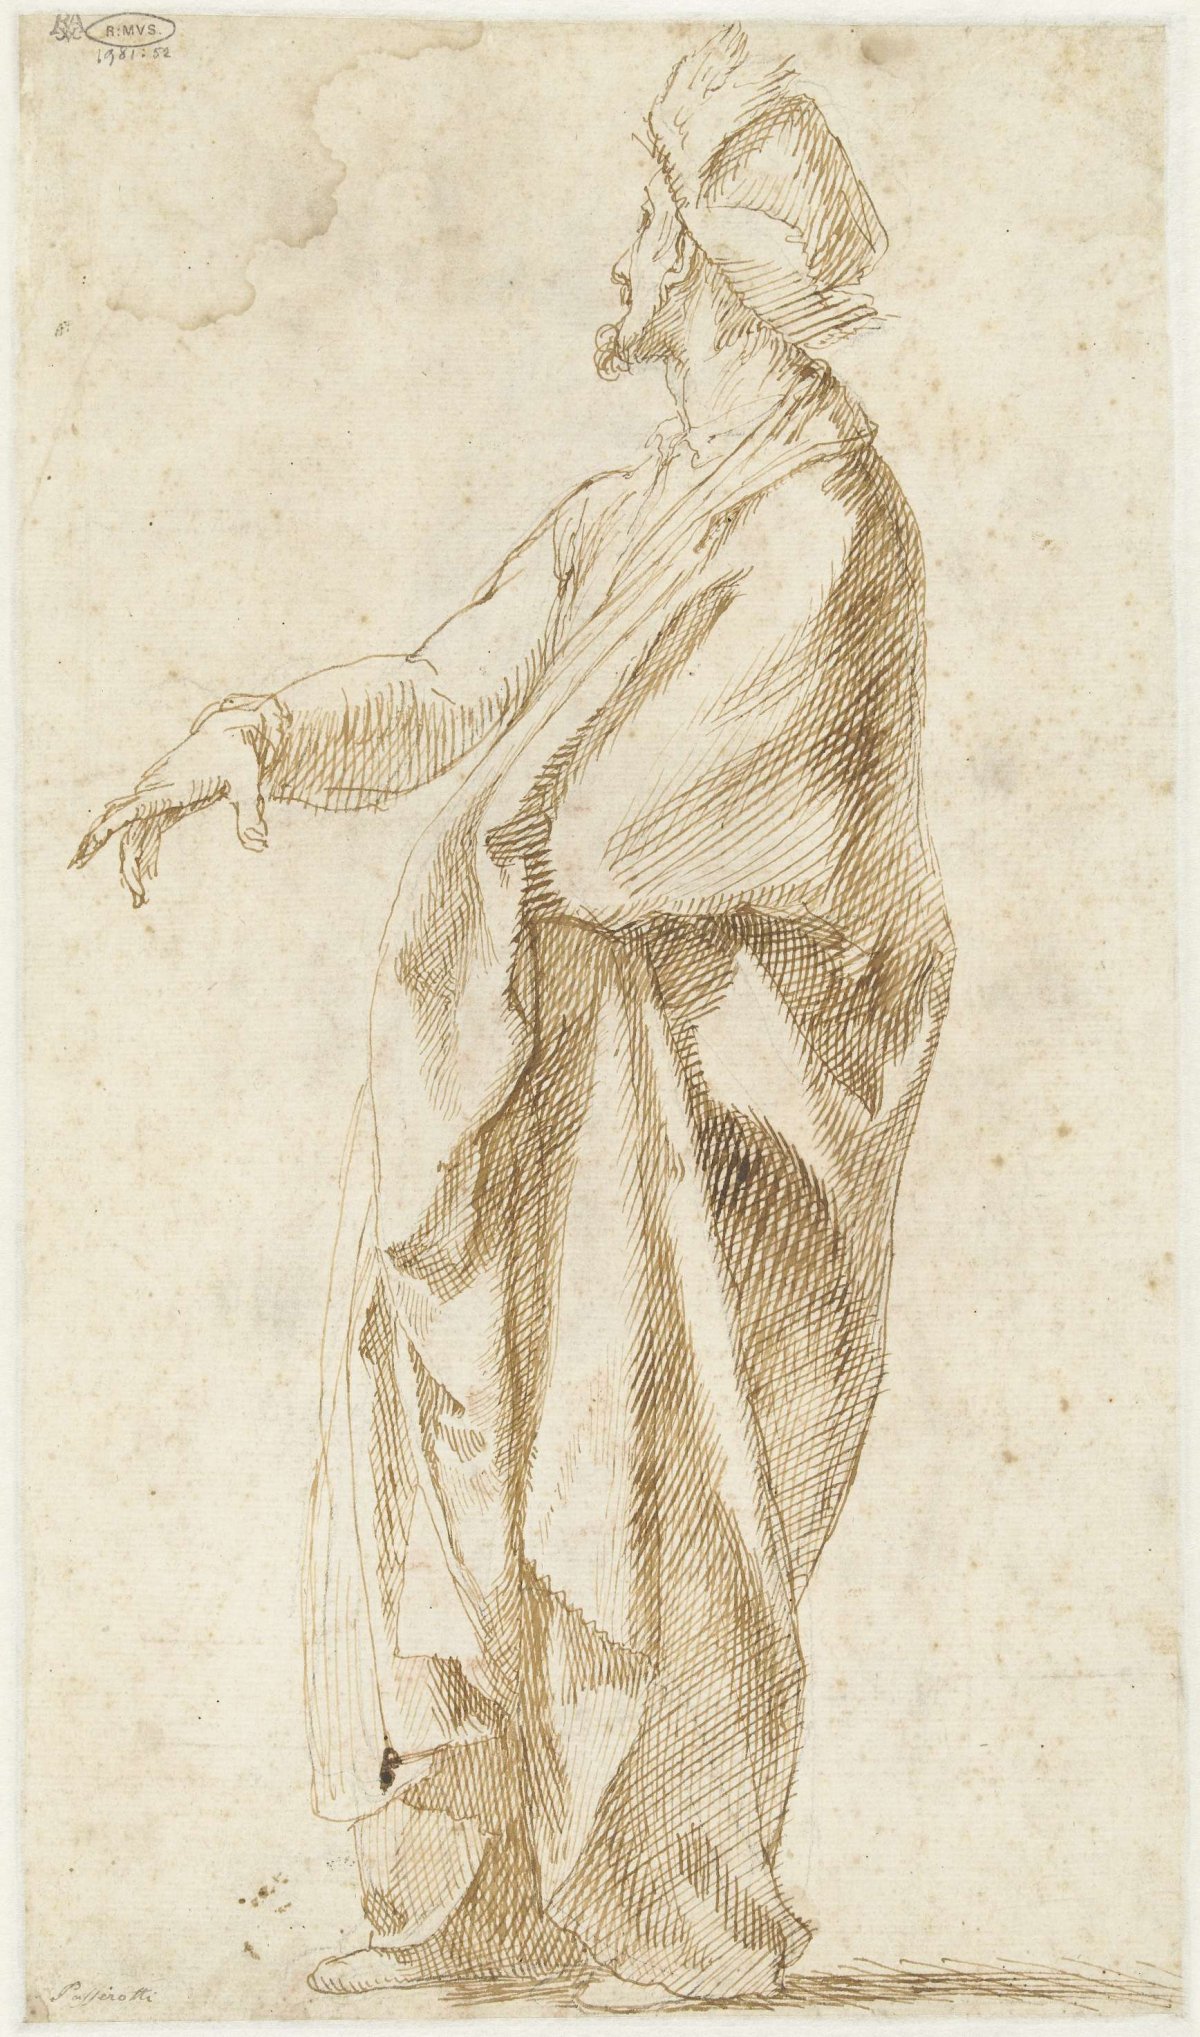 Draped model, with one hand extended forward, Bartolomeo Passarotti, 1539 - 1592